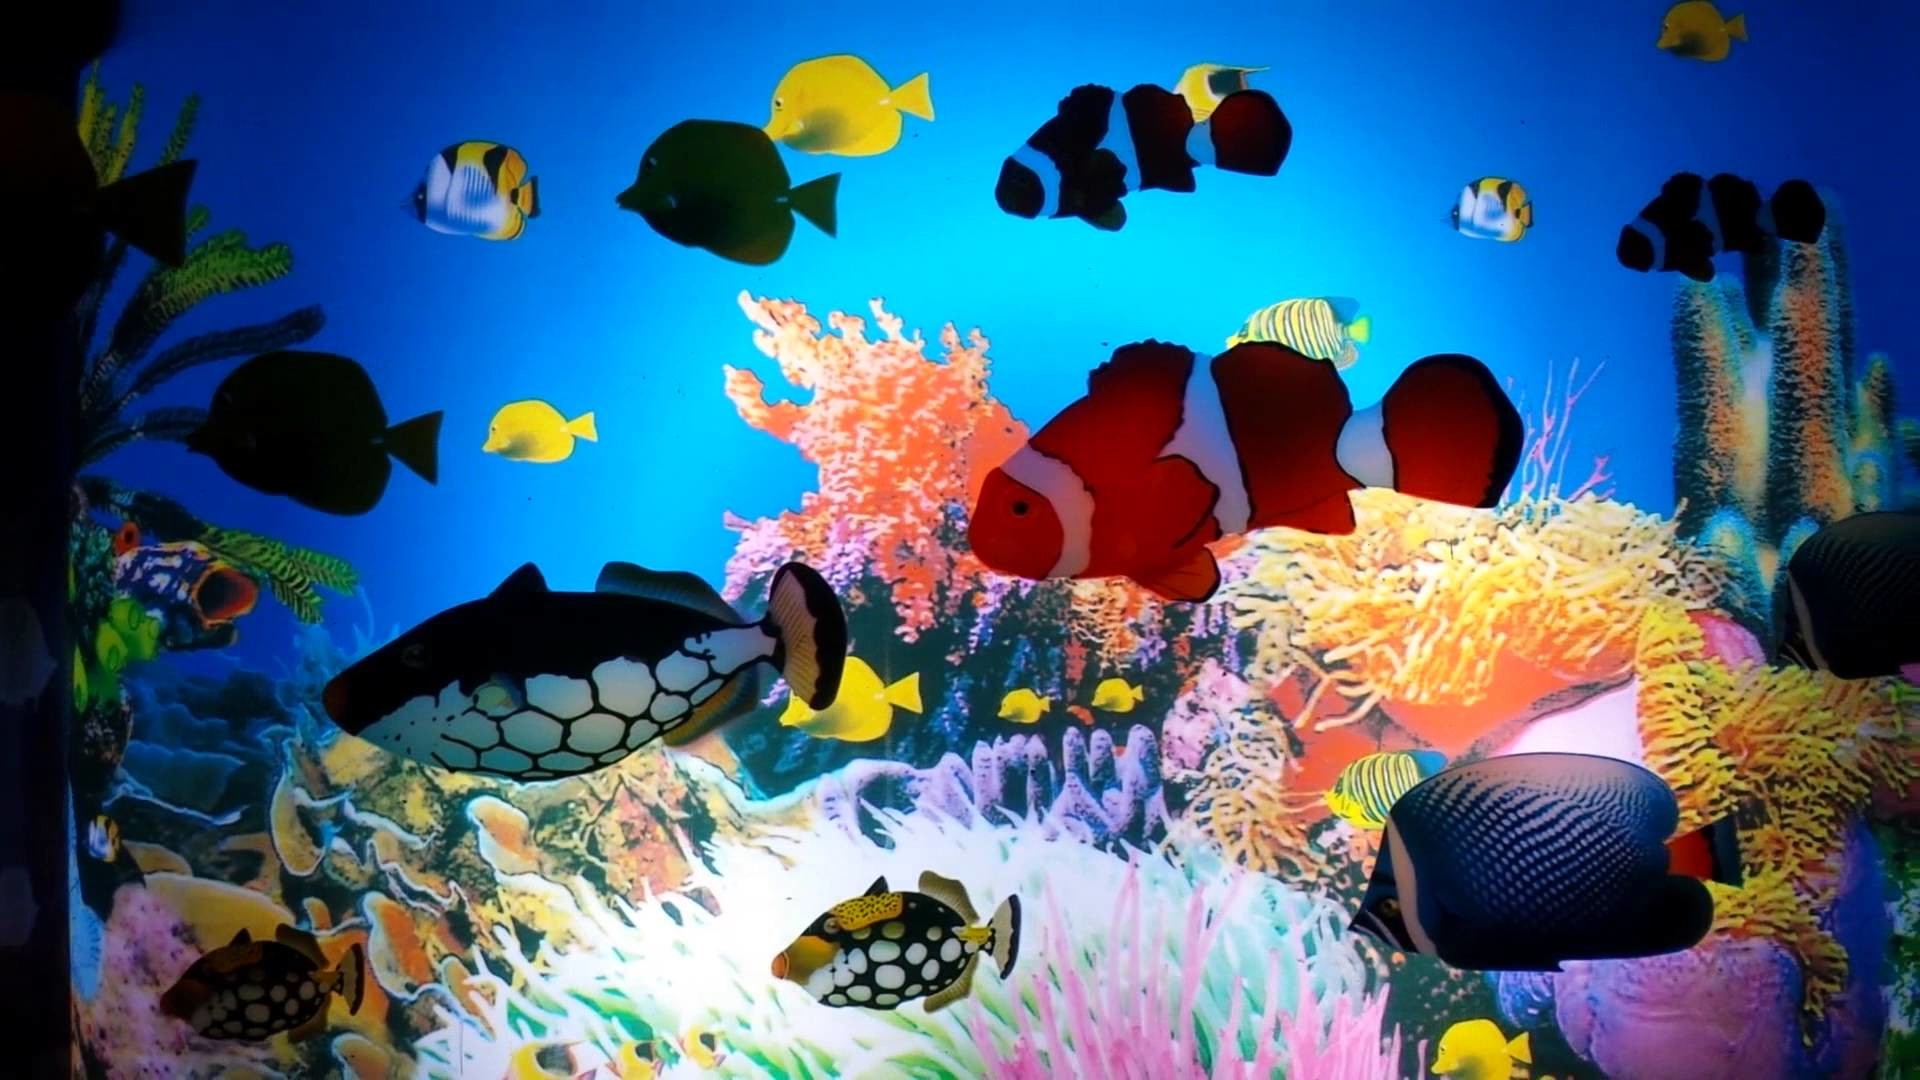 bewegliche aquarium tapete,meeresbiologie,korallenriff,unter wasser,korallenrifffische,riff